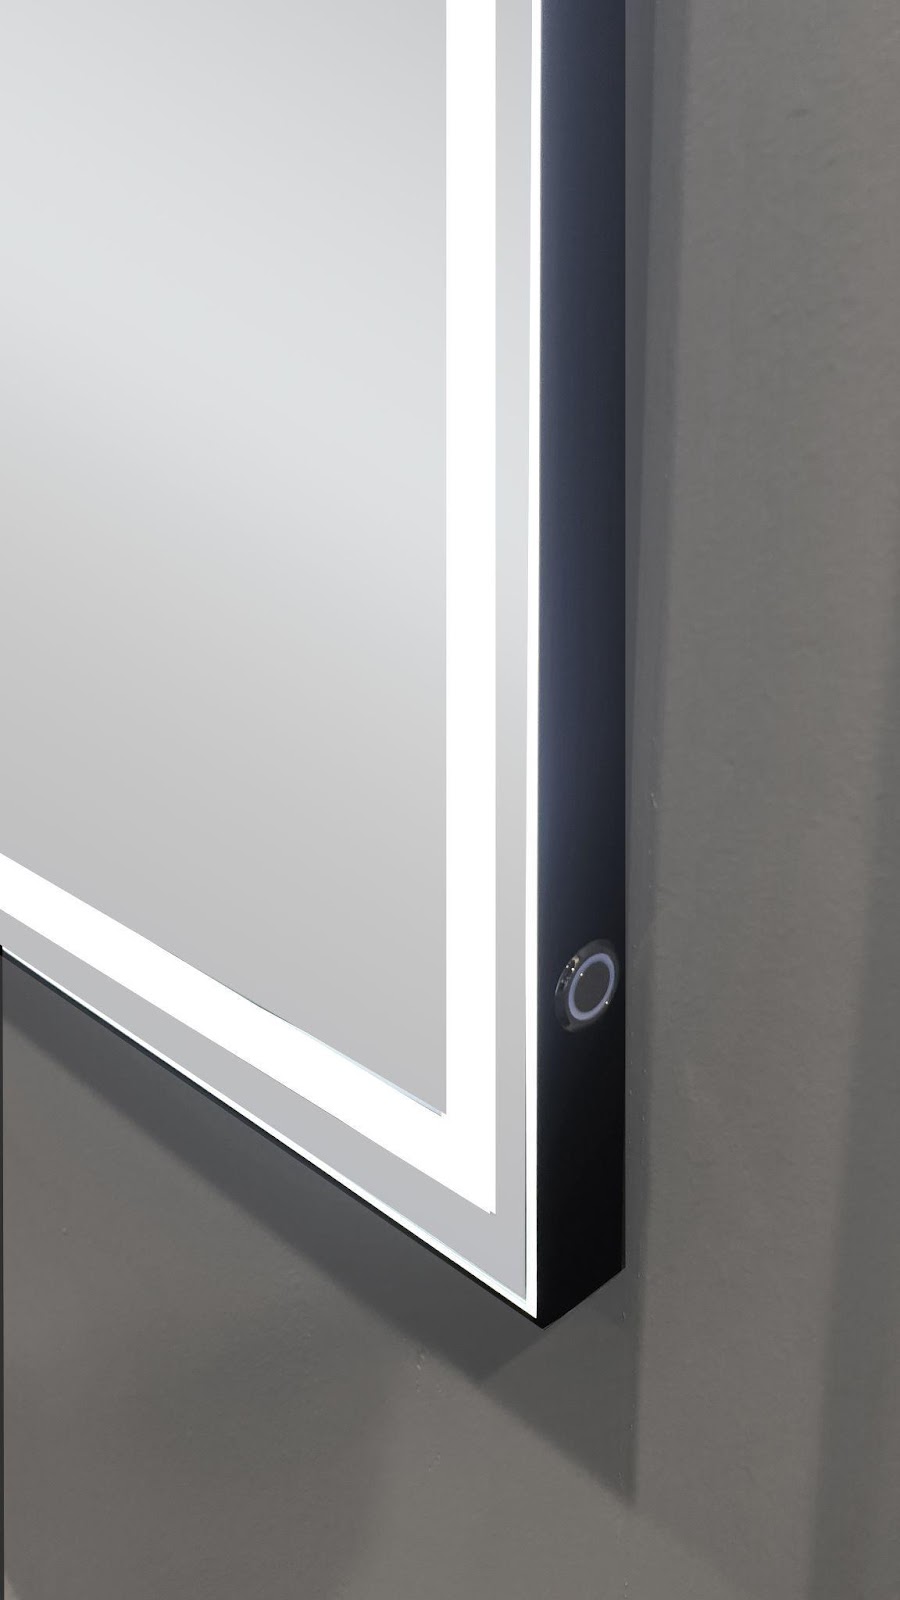 Espejos con marco negro para el baño - Espejos LED Xpertials